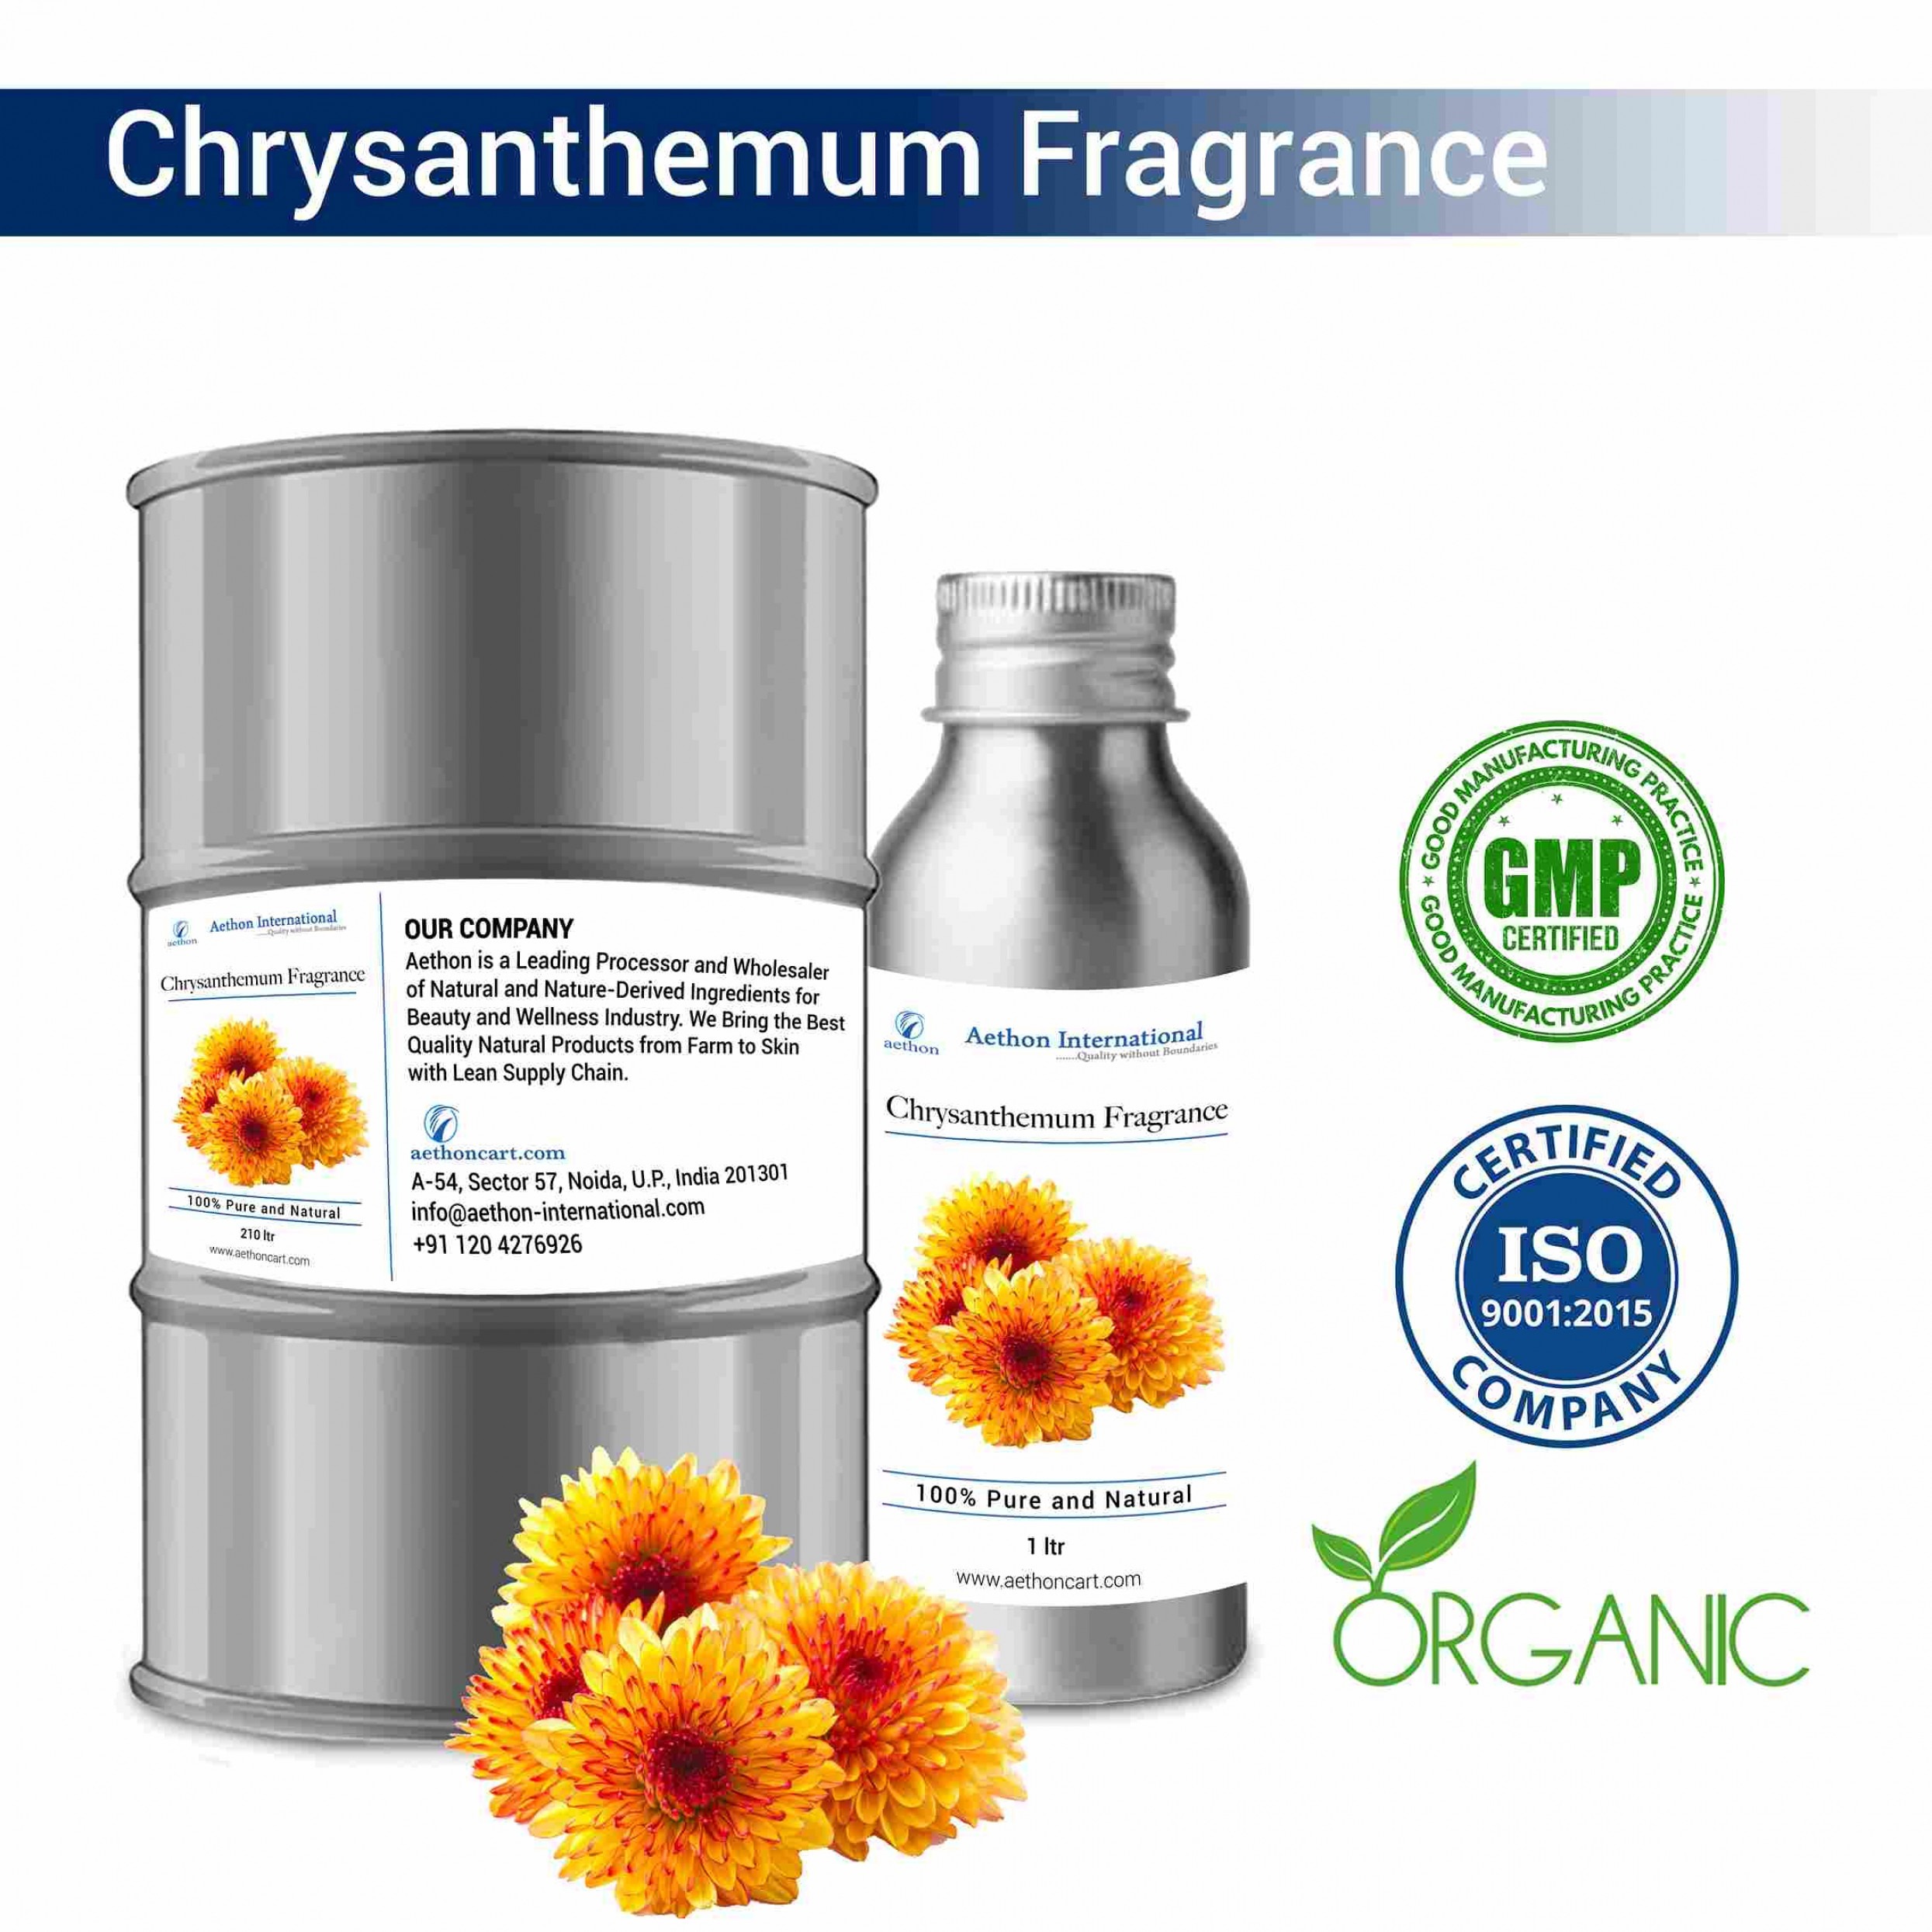 Chrysanthemum Fragrance